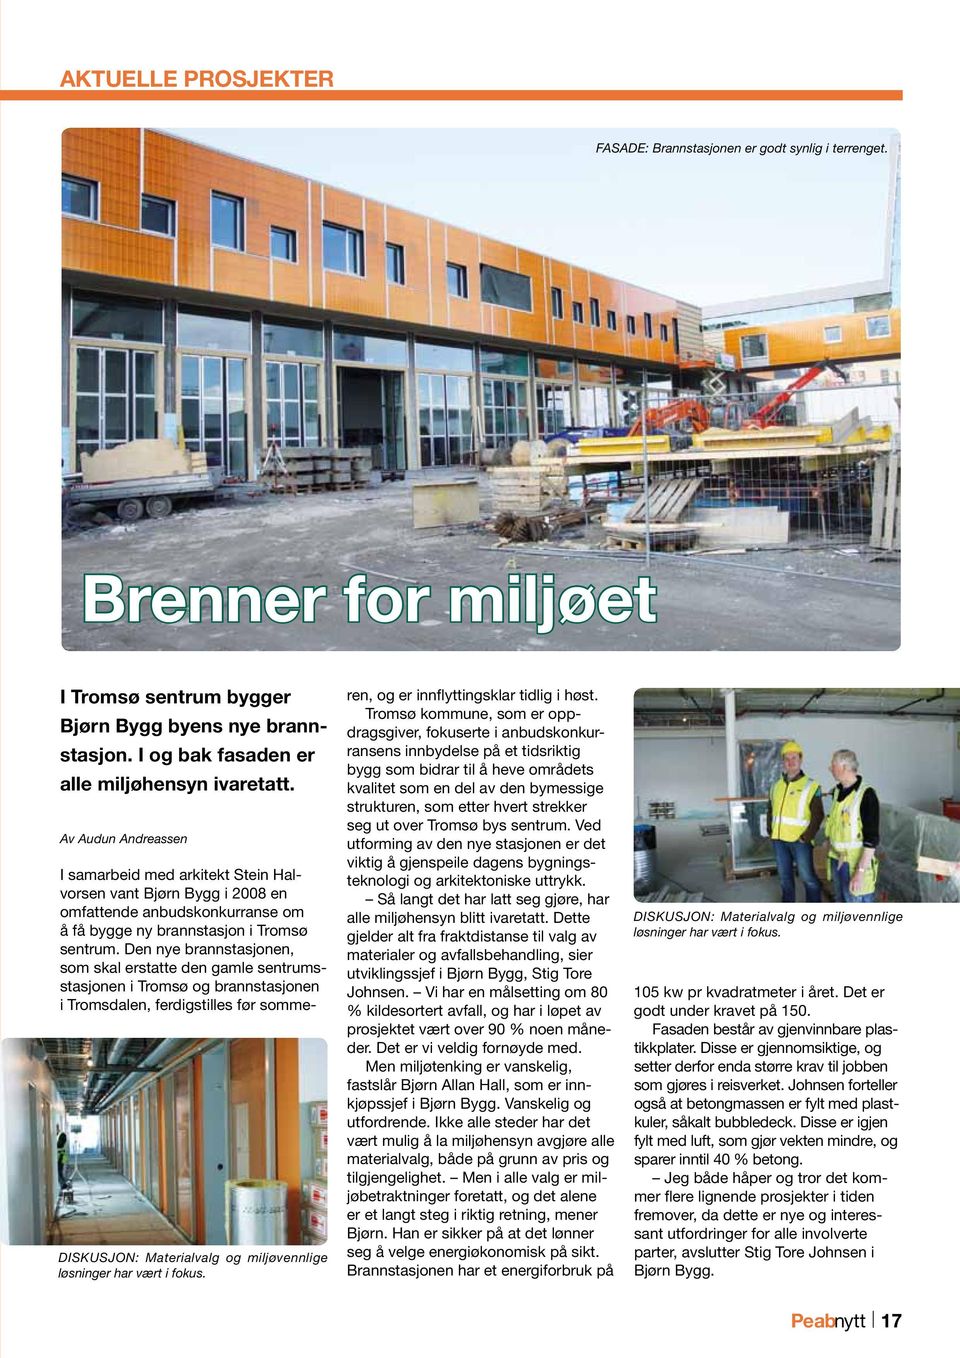 I samarbeid med arkitekt Stein Halvorsen vant Bjørn Bygg i 2008 en omfattende anbudskonkurranse om å få bygge ny brannstasjon i Tromsø sentrum.